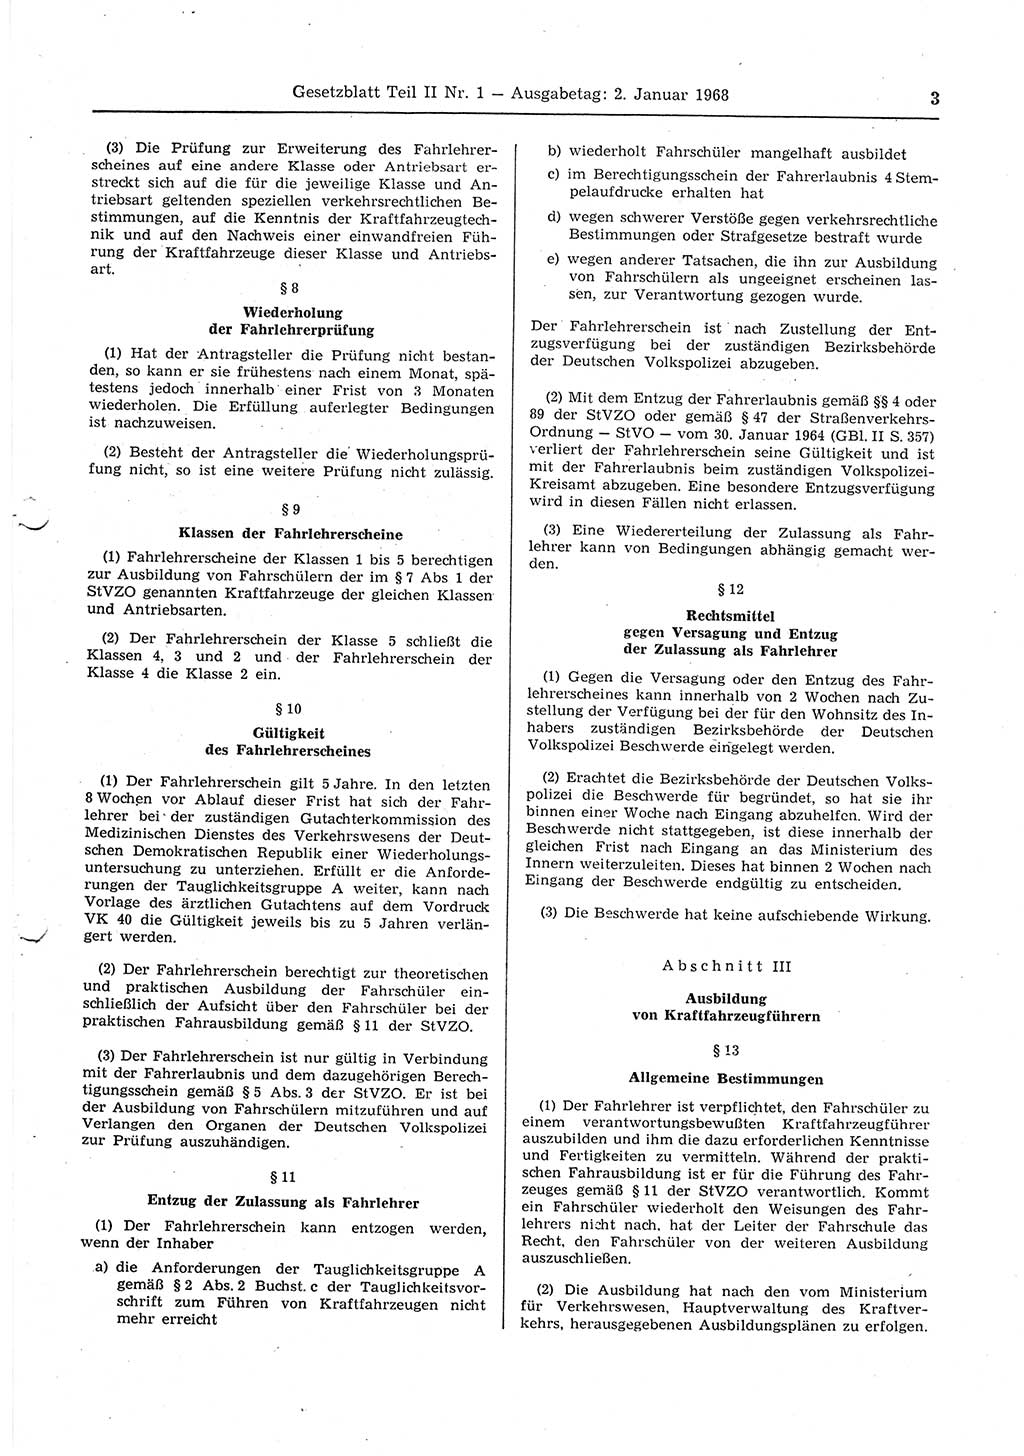 Gesetzblatt (GBl.) der Deutschen Demokratischen Republik (DDR) Teil ⅠⅠ 1968, Seite 3 (GBl. DDR ⅠⅠ 1968, S. 3)